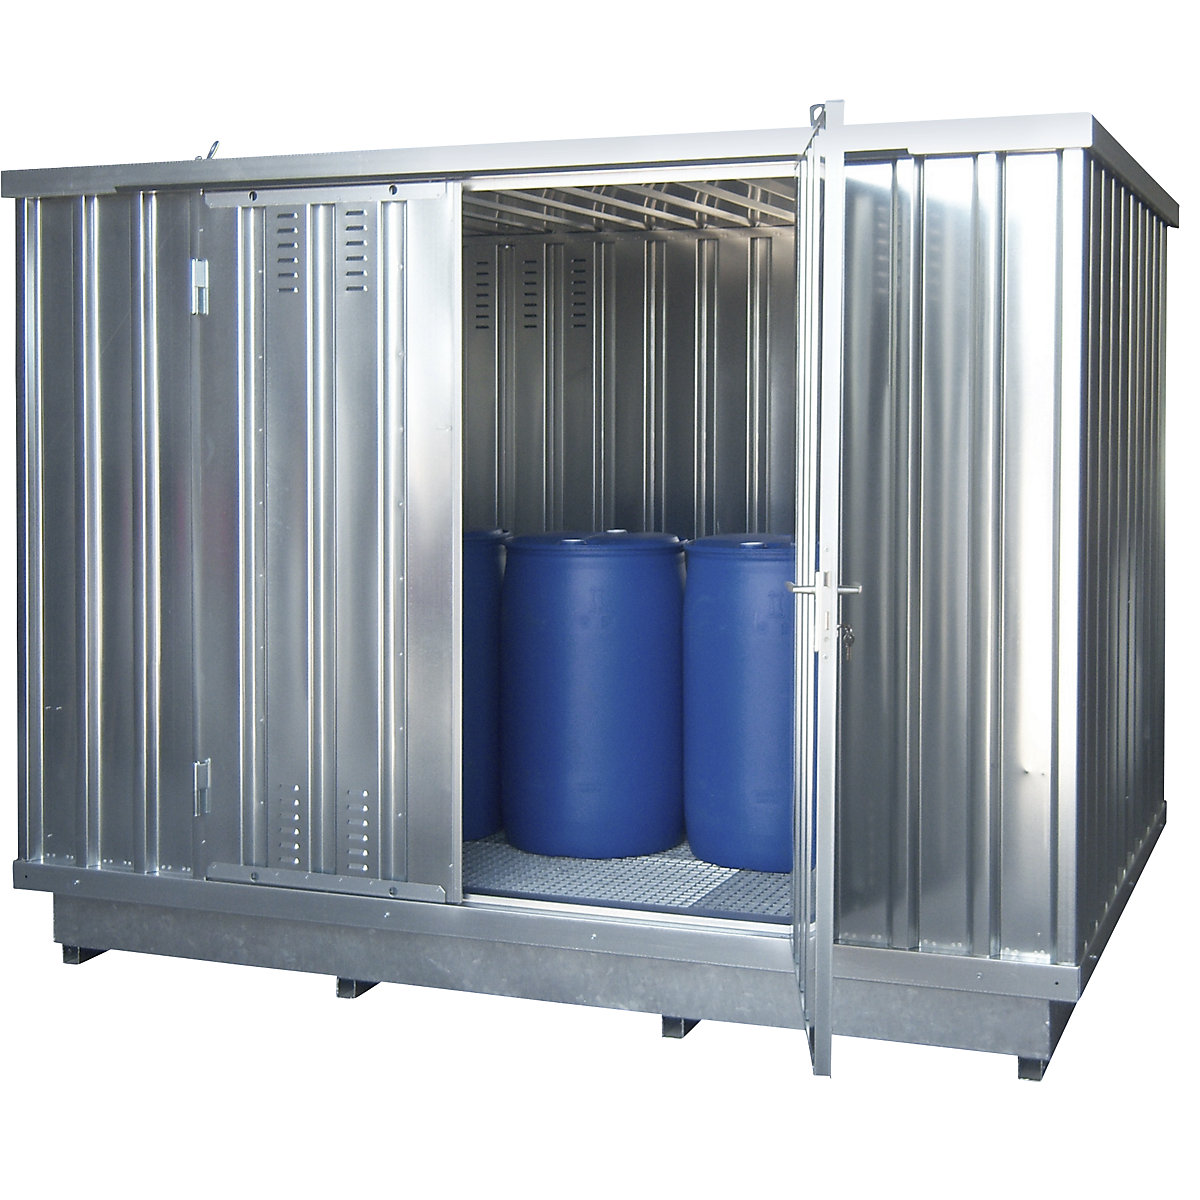 Container de depozitare pentru substanţe periculoase, pentru medii care poluează pânza freatică - LaCont